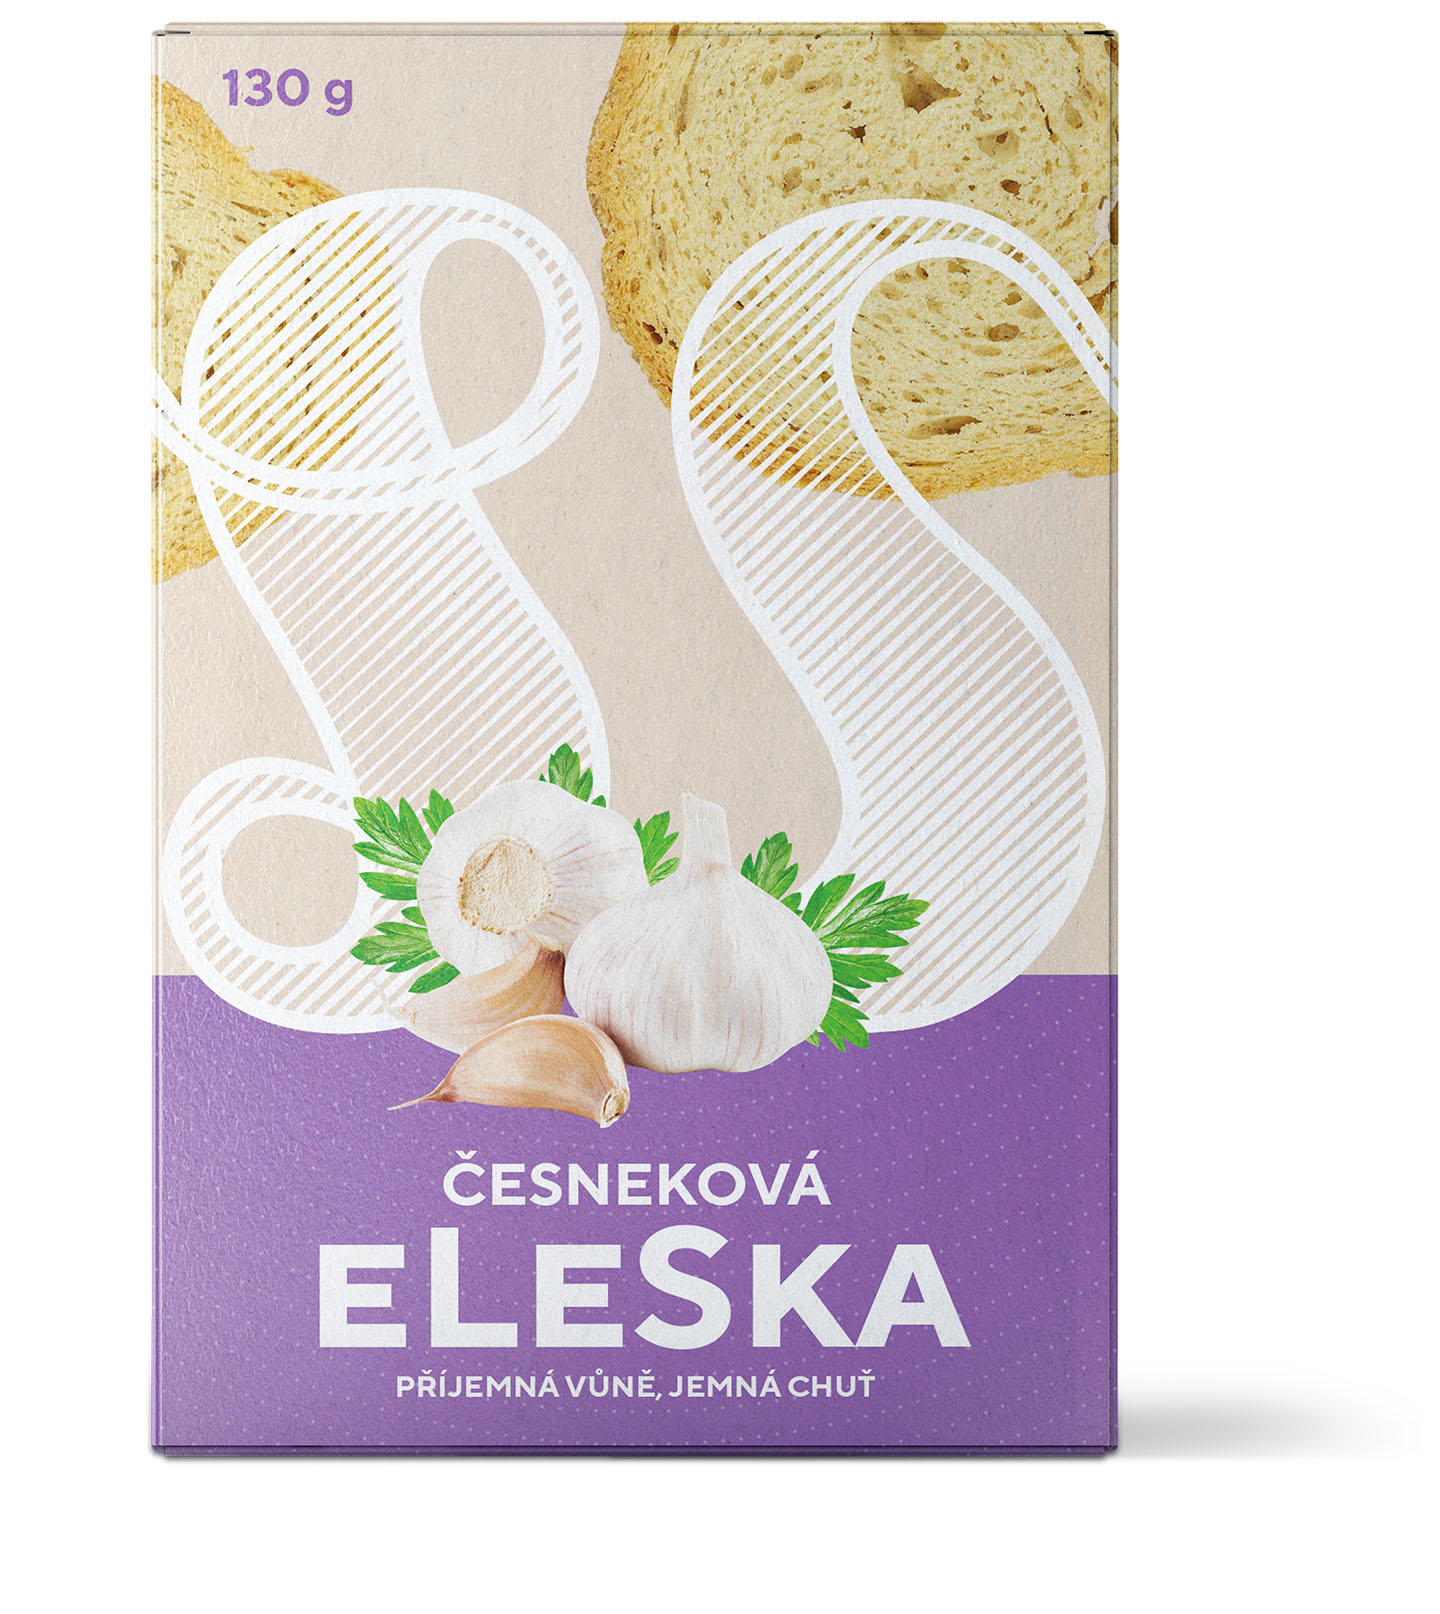 Garlic eLeSka 